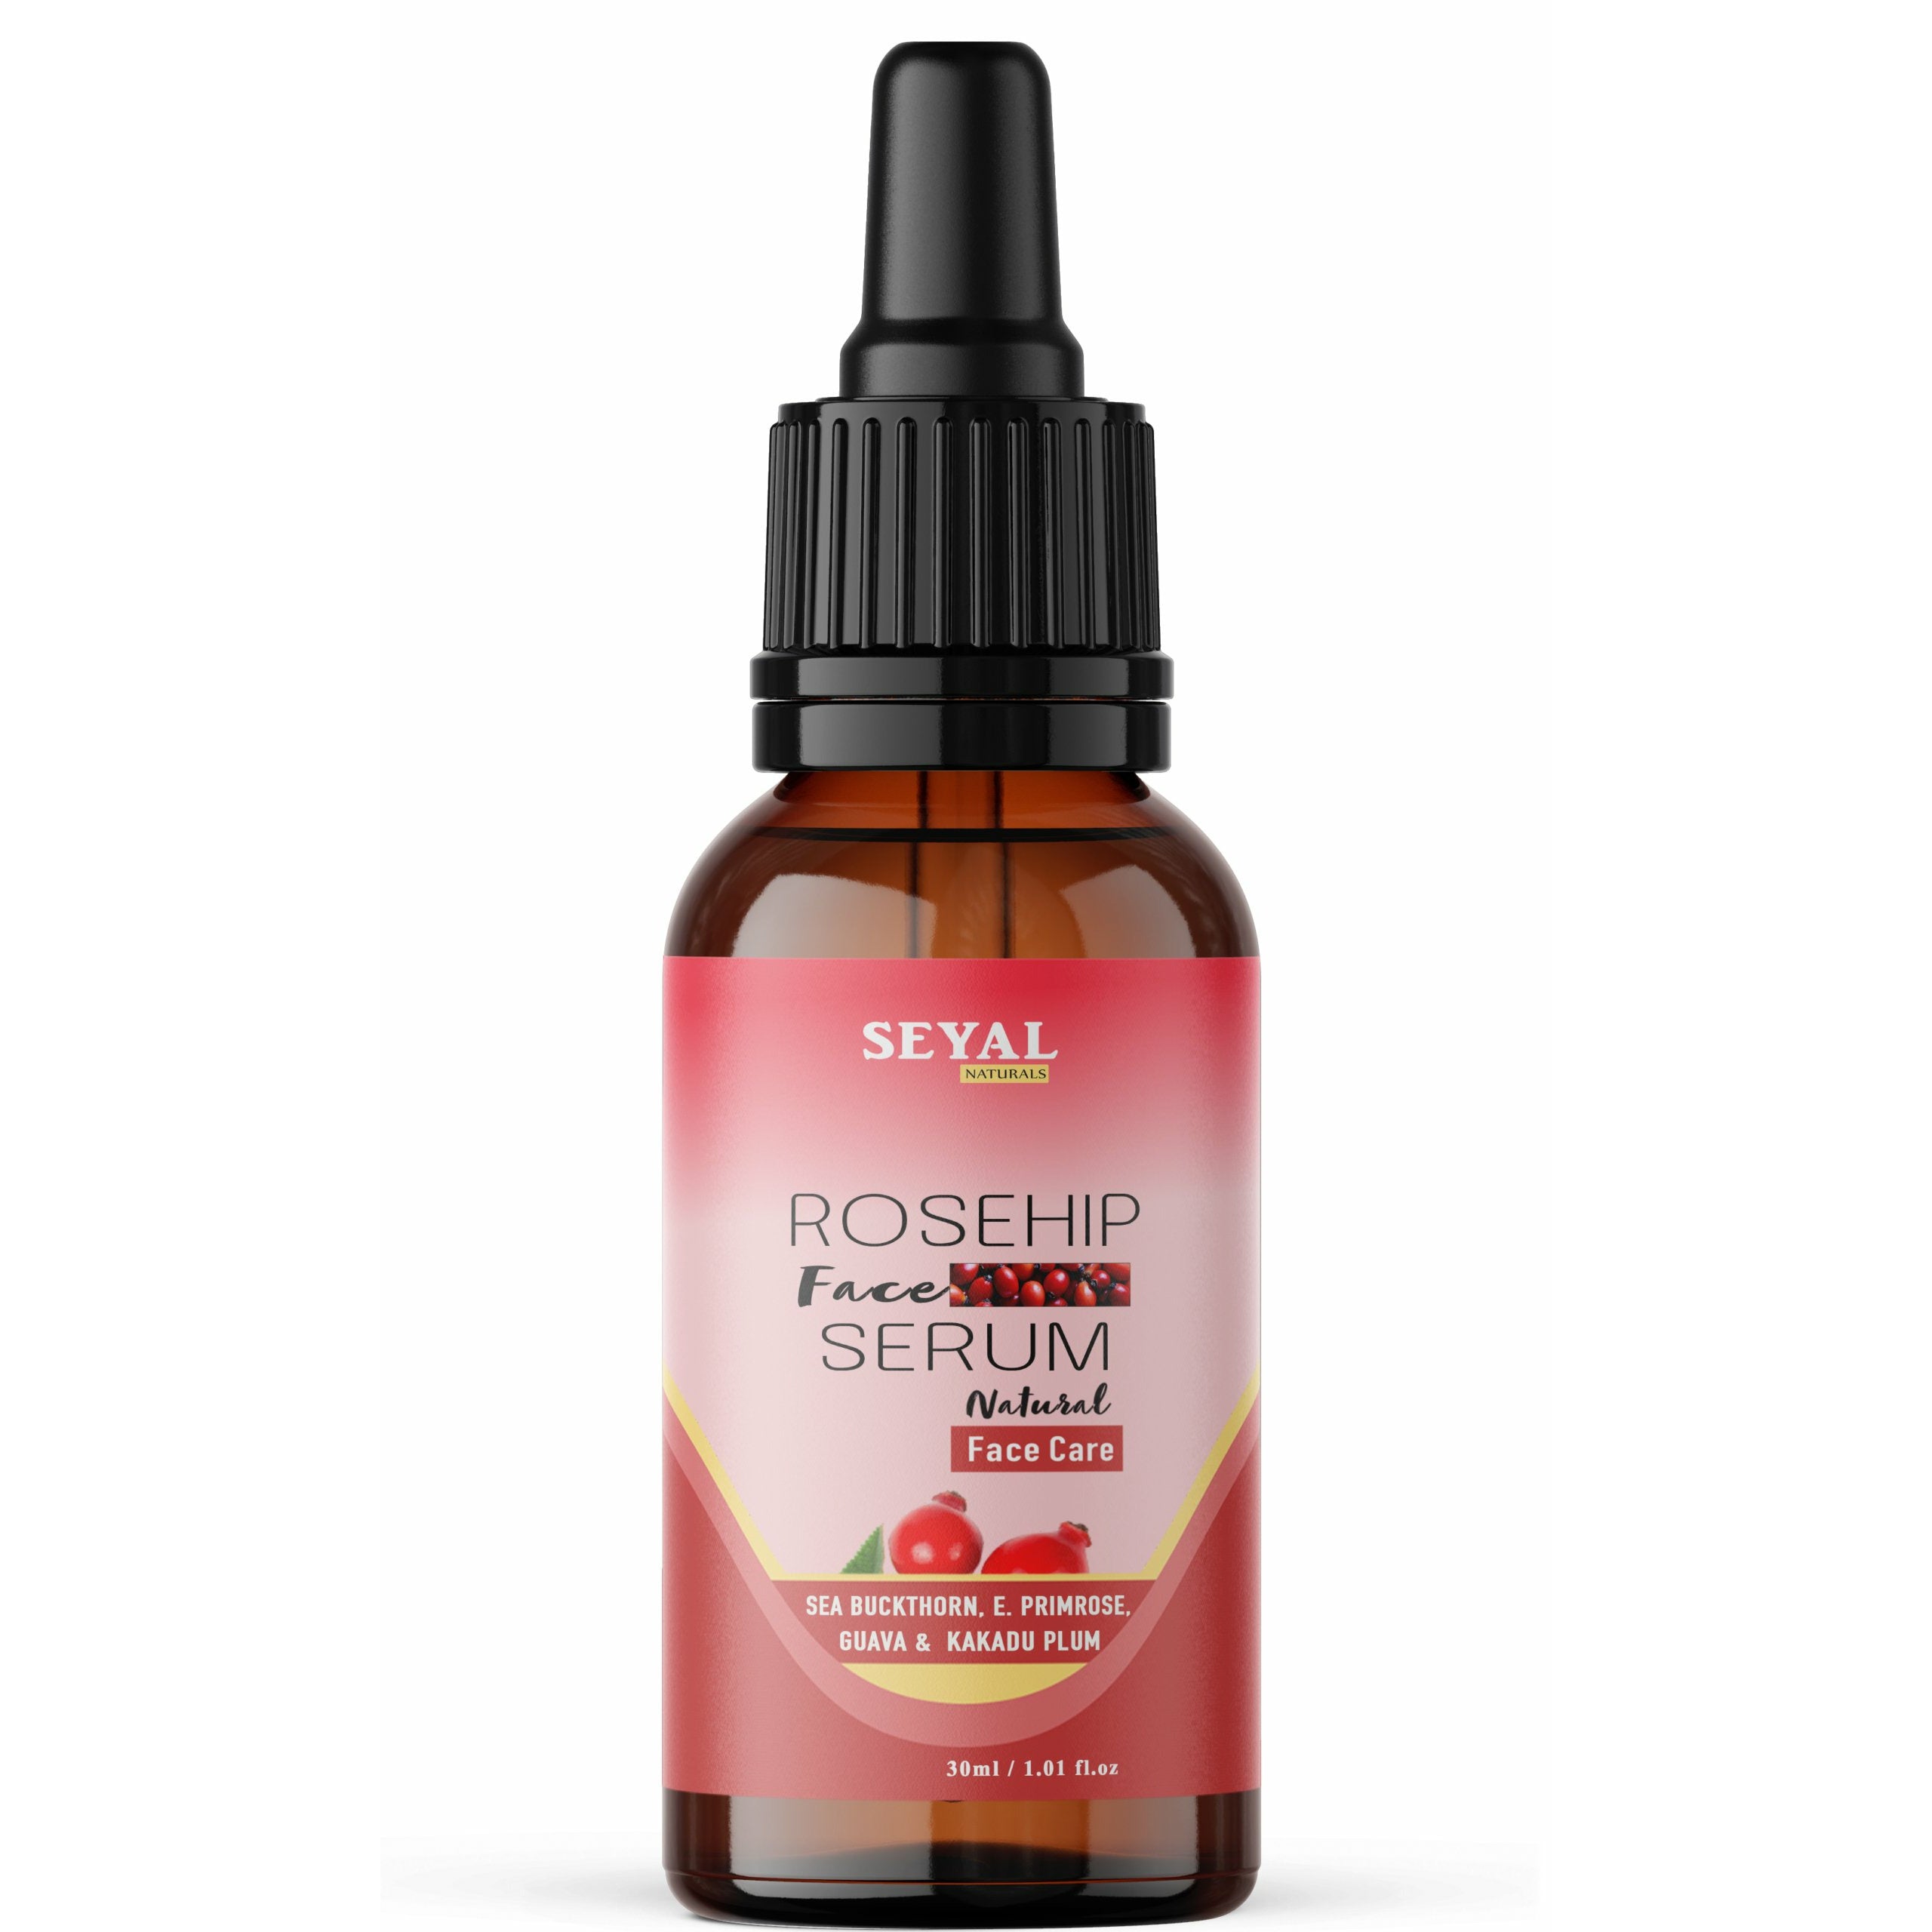 Seyal Rosehip Face Serum | Skin Glowing & Brightening Serum - 30ml